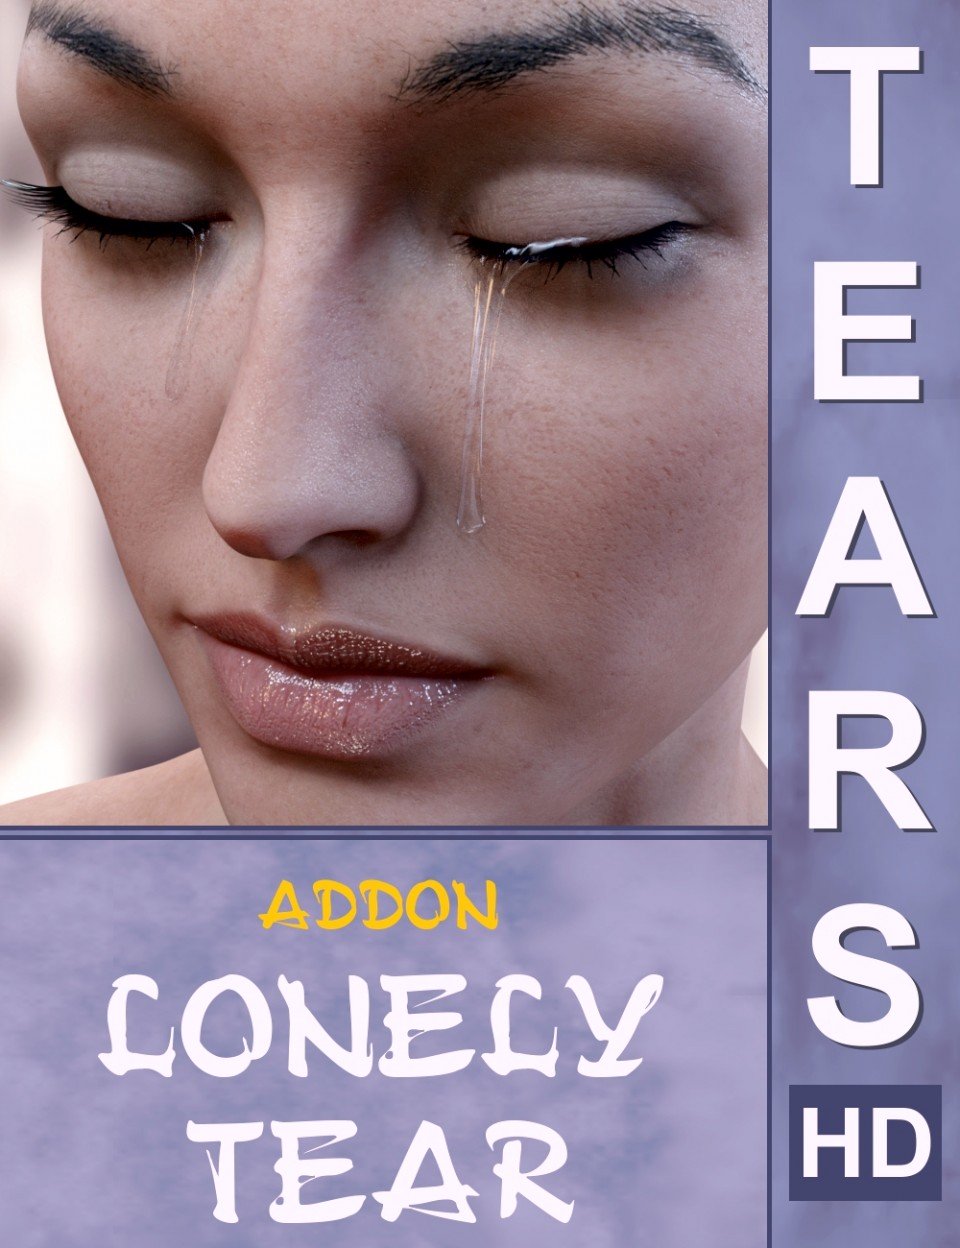 Tears HD Addon Lonely Tear_DAZ3DDL